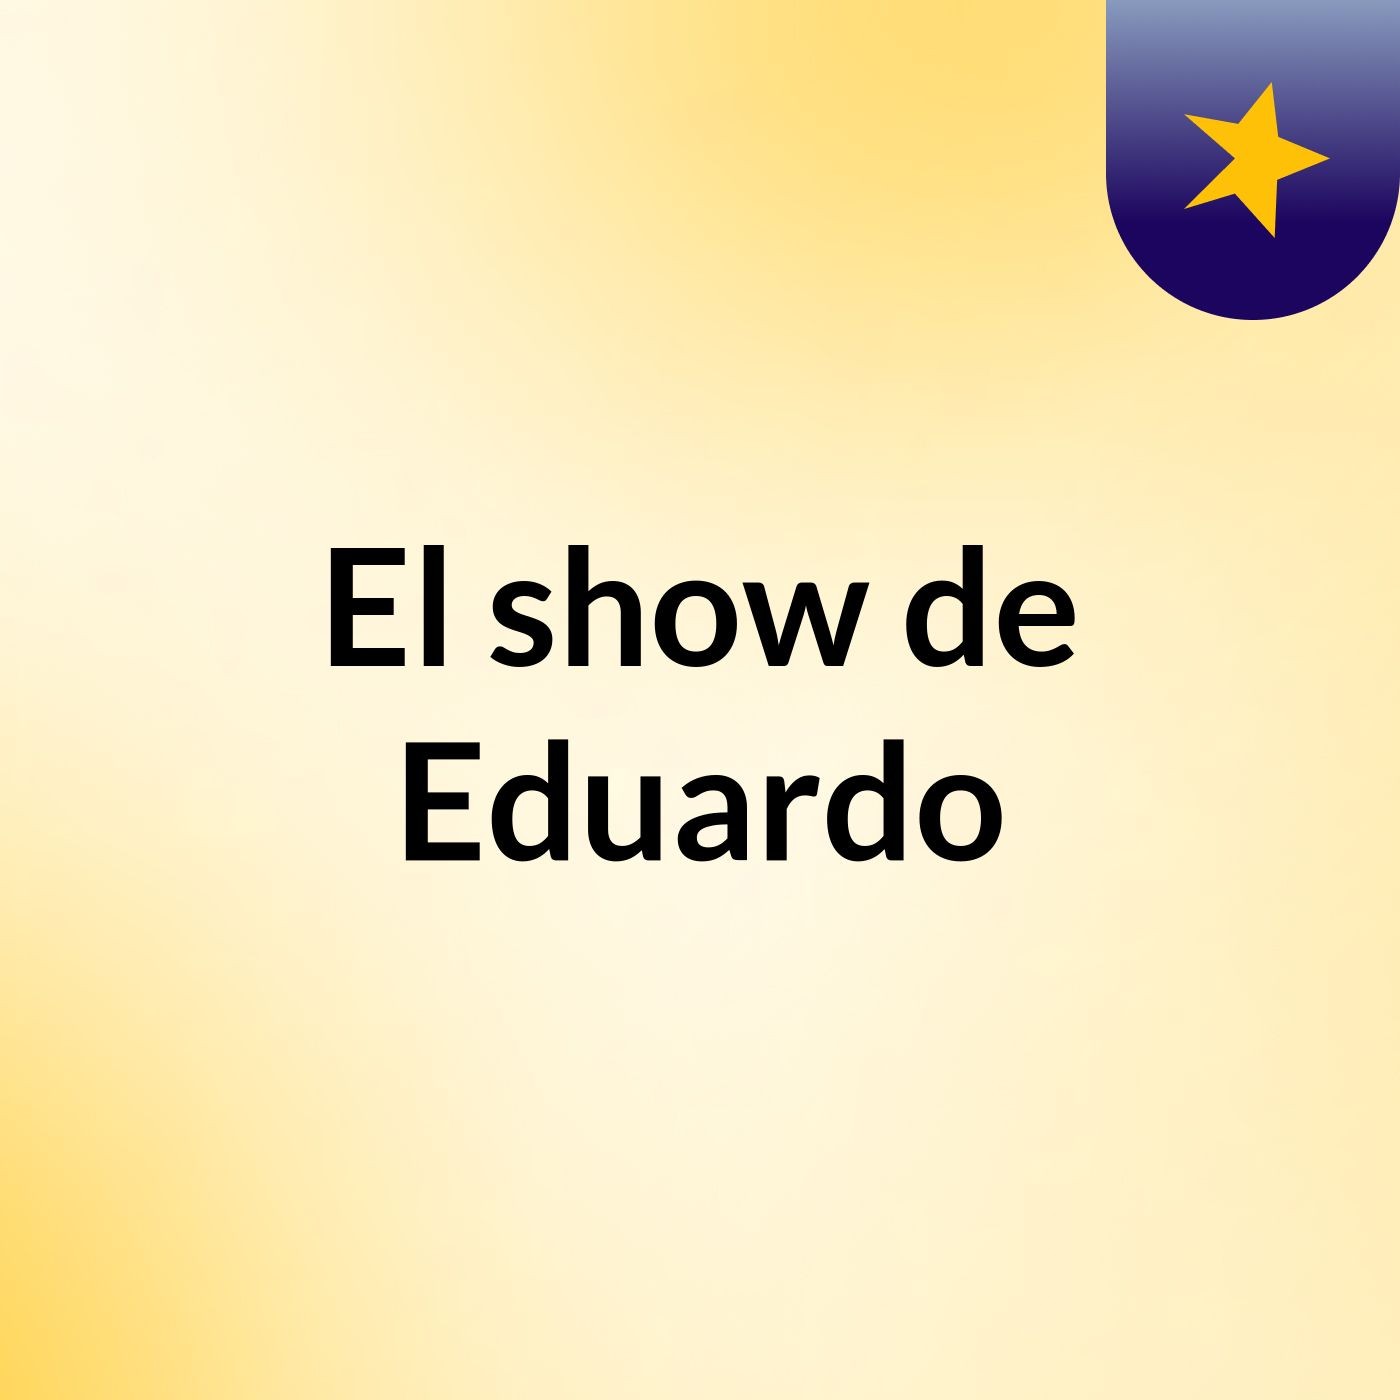 El show de Eduardo